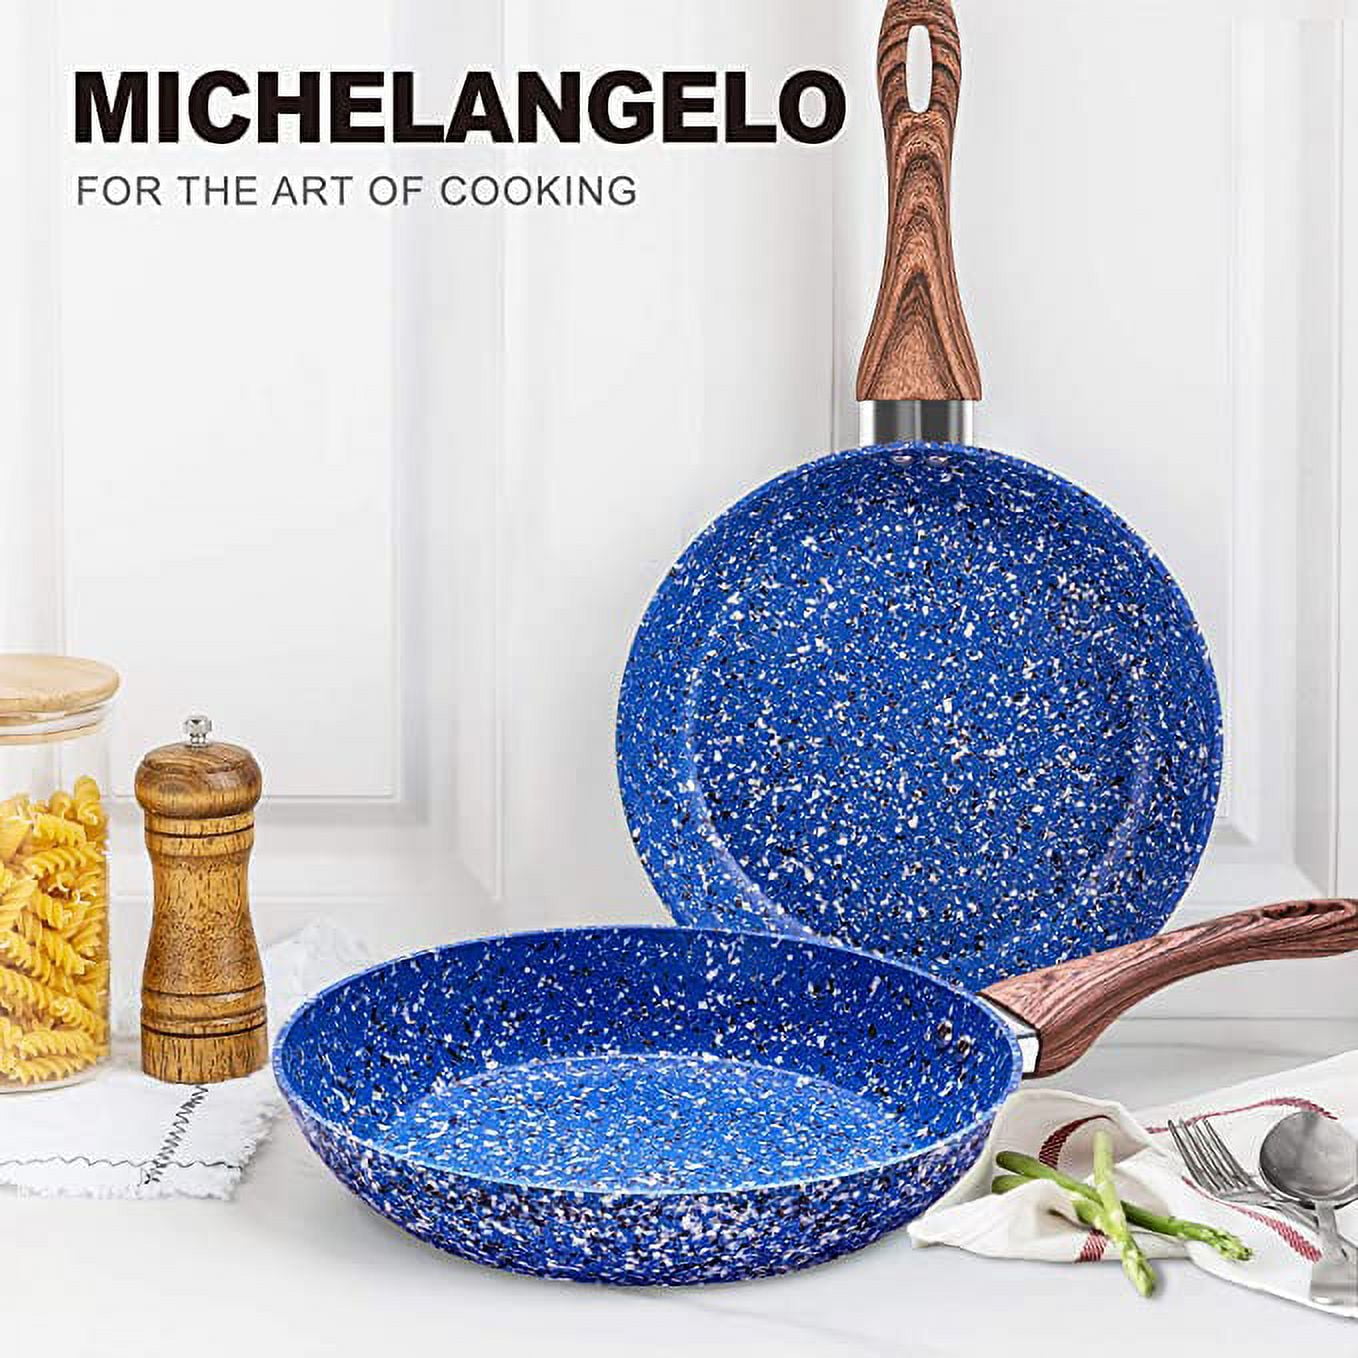 Michelangelo's Popular Nonstick Pan Is 40% Off at